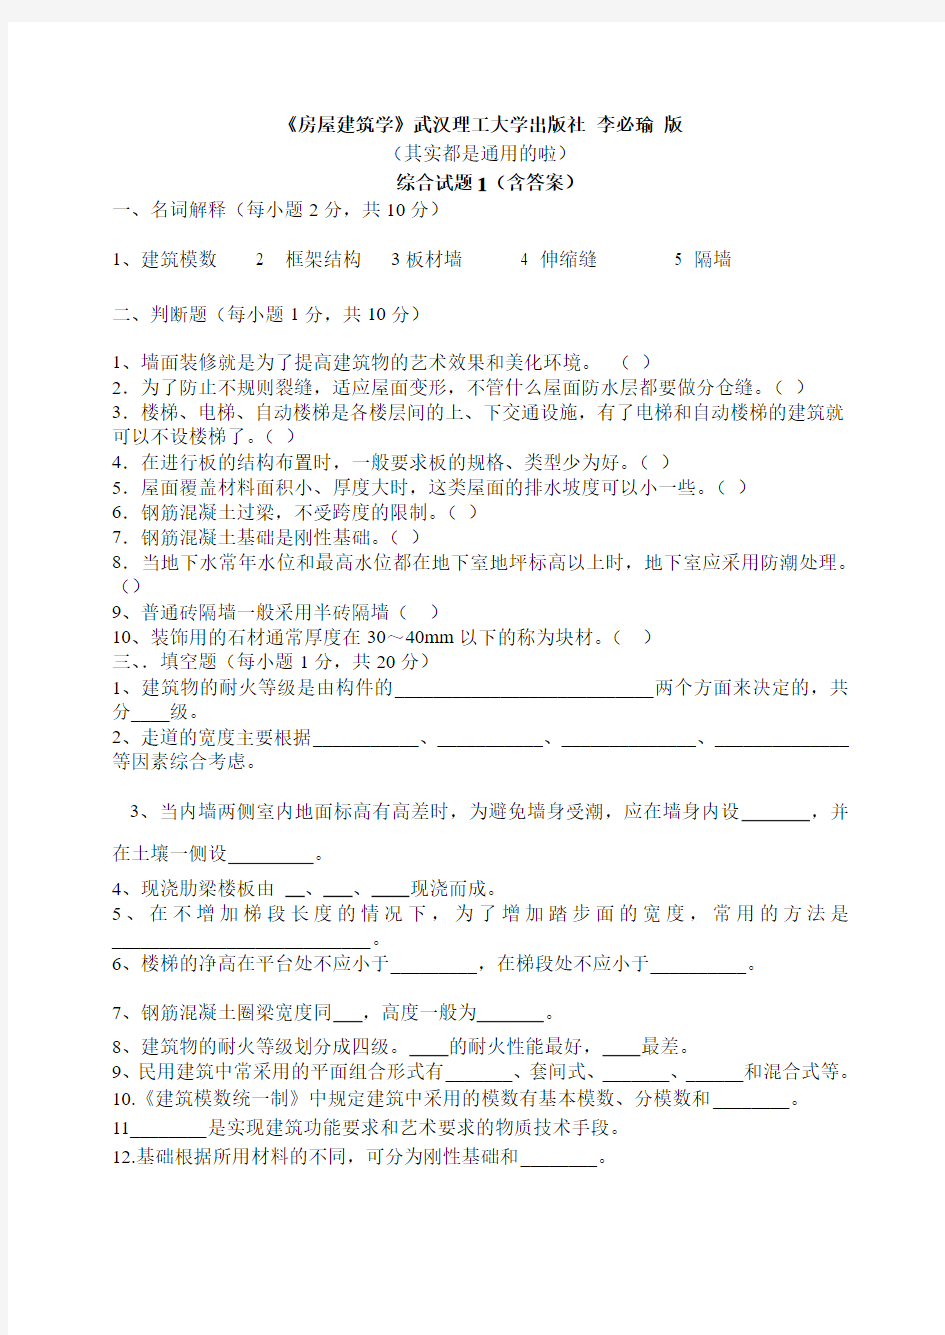 《房屋建筑学》综合测试题1(含答案)武汉理工大学出版社李必瑜版